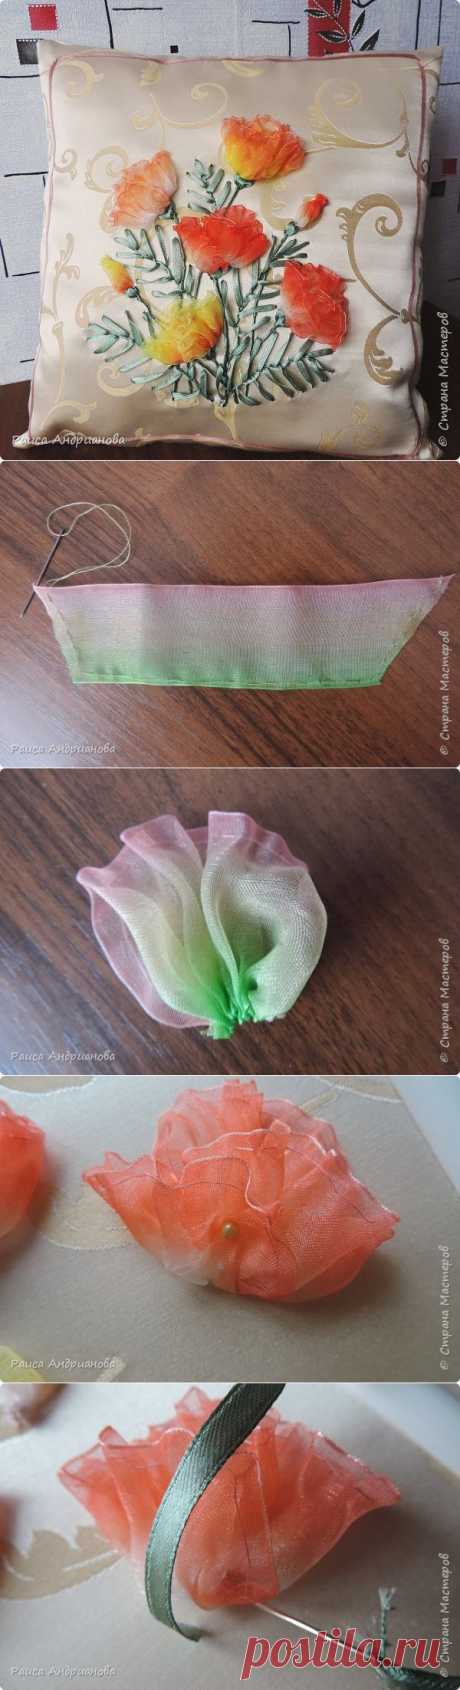 Эшшольция махровая из органзы. Вышивка на декоративной подушке. | Страна Мастеров